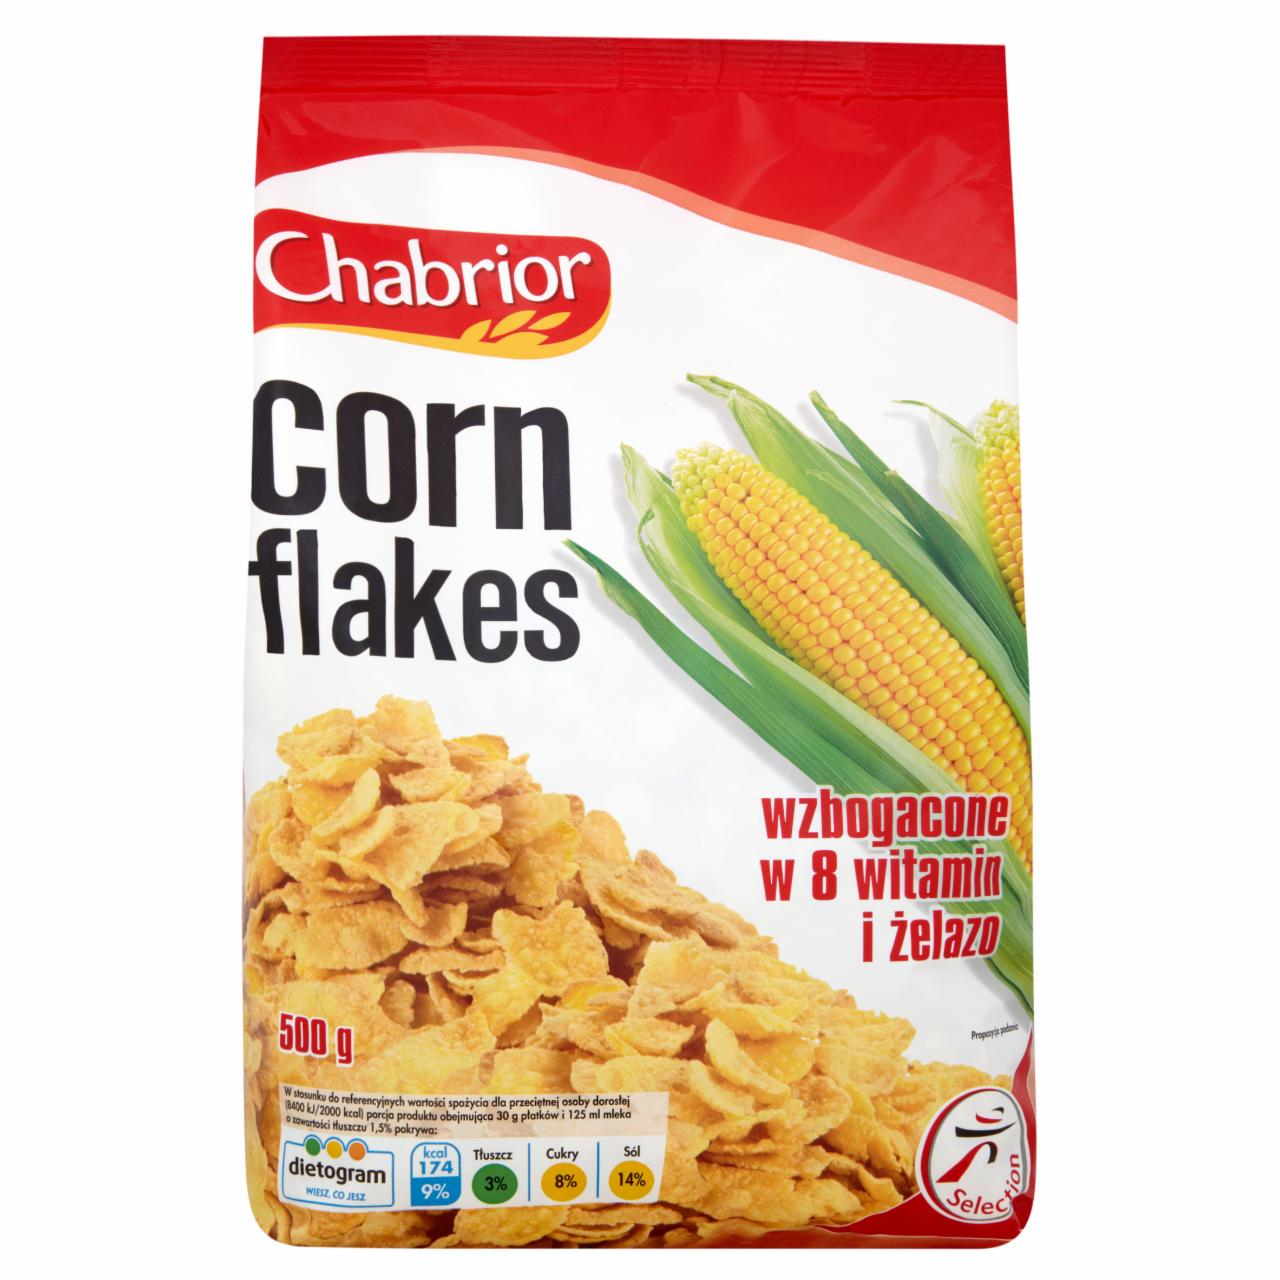 Zdjęcia - Corn Flakes Płatki kukurydziane wzbogacone w 8 witamin i żelazo Chabrior